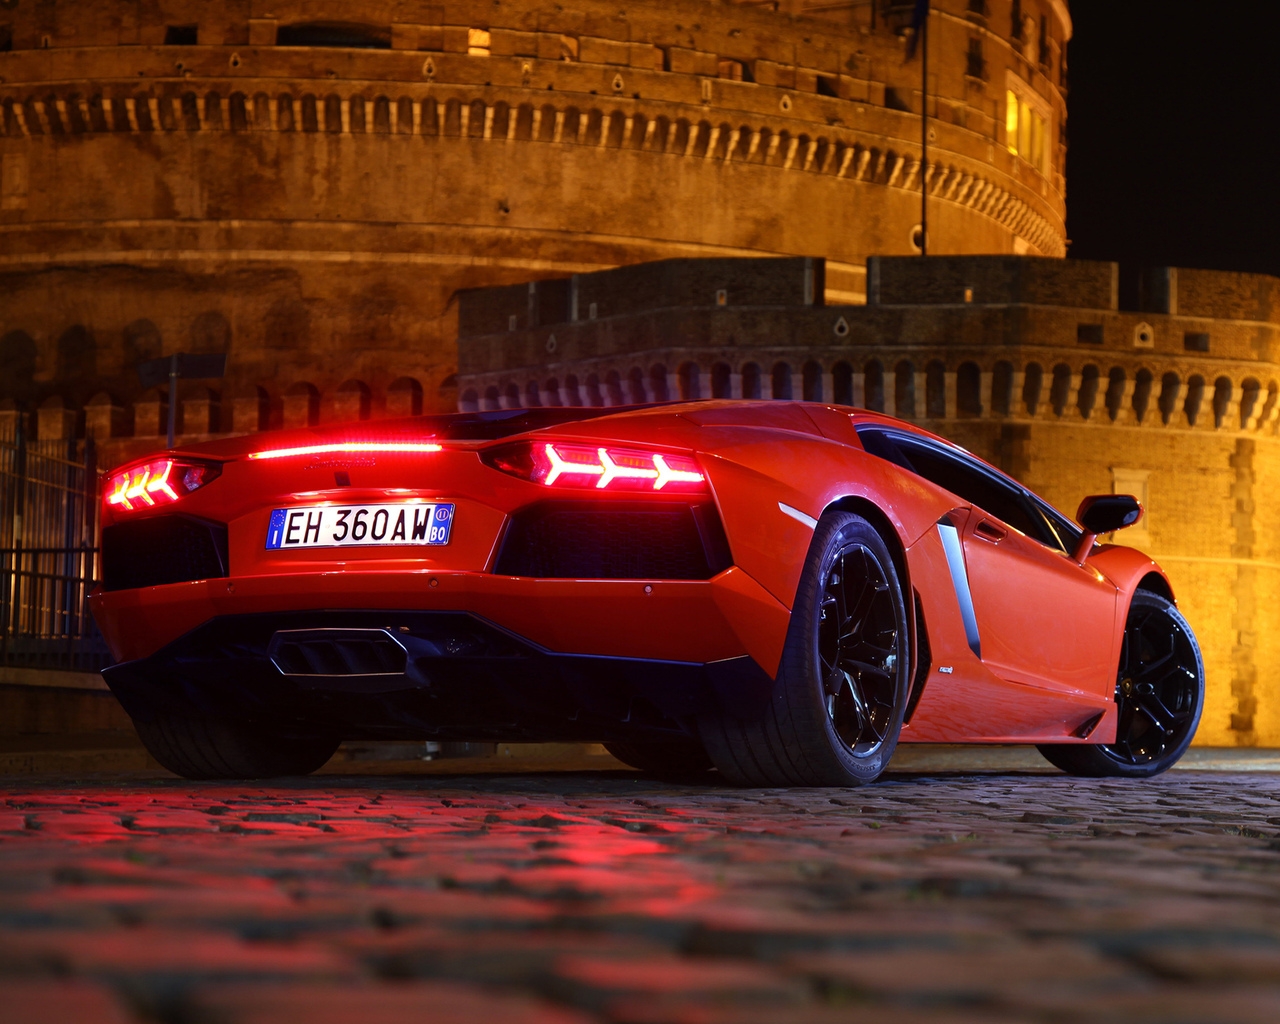 Red Lamborghini Aventador for 1280 x 1024 resolution